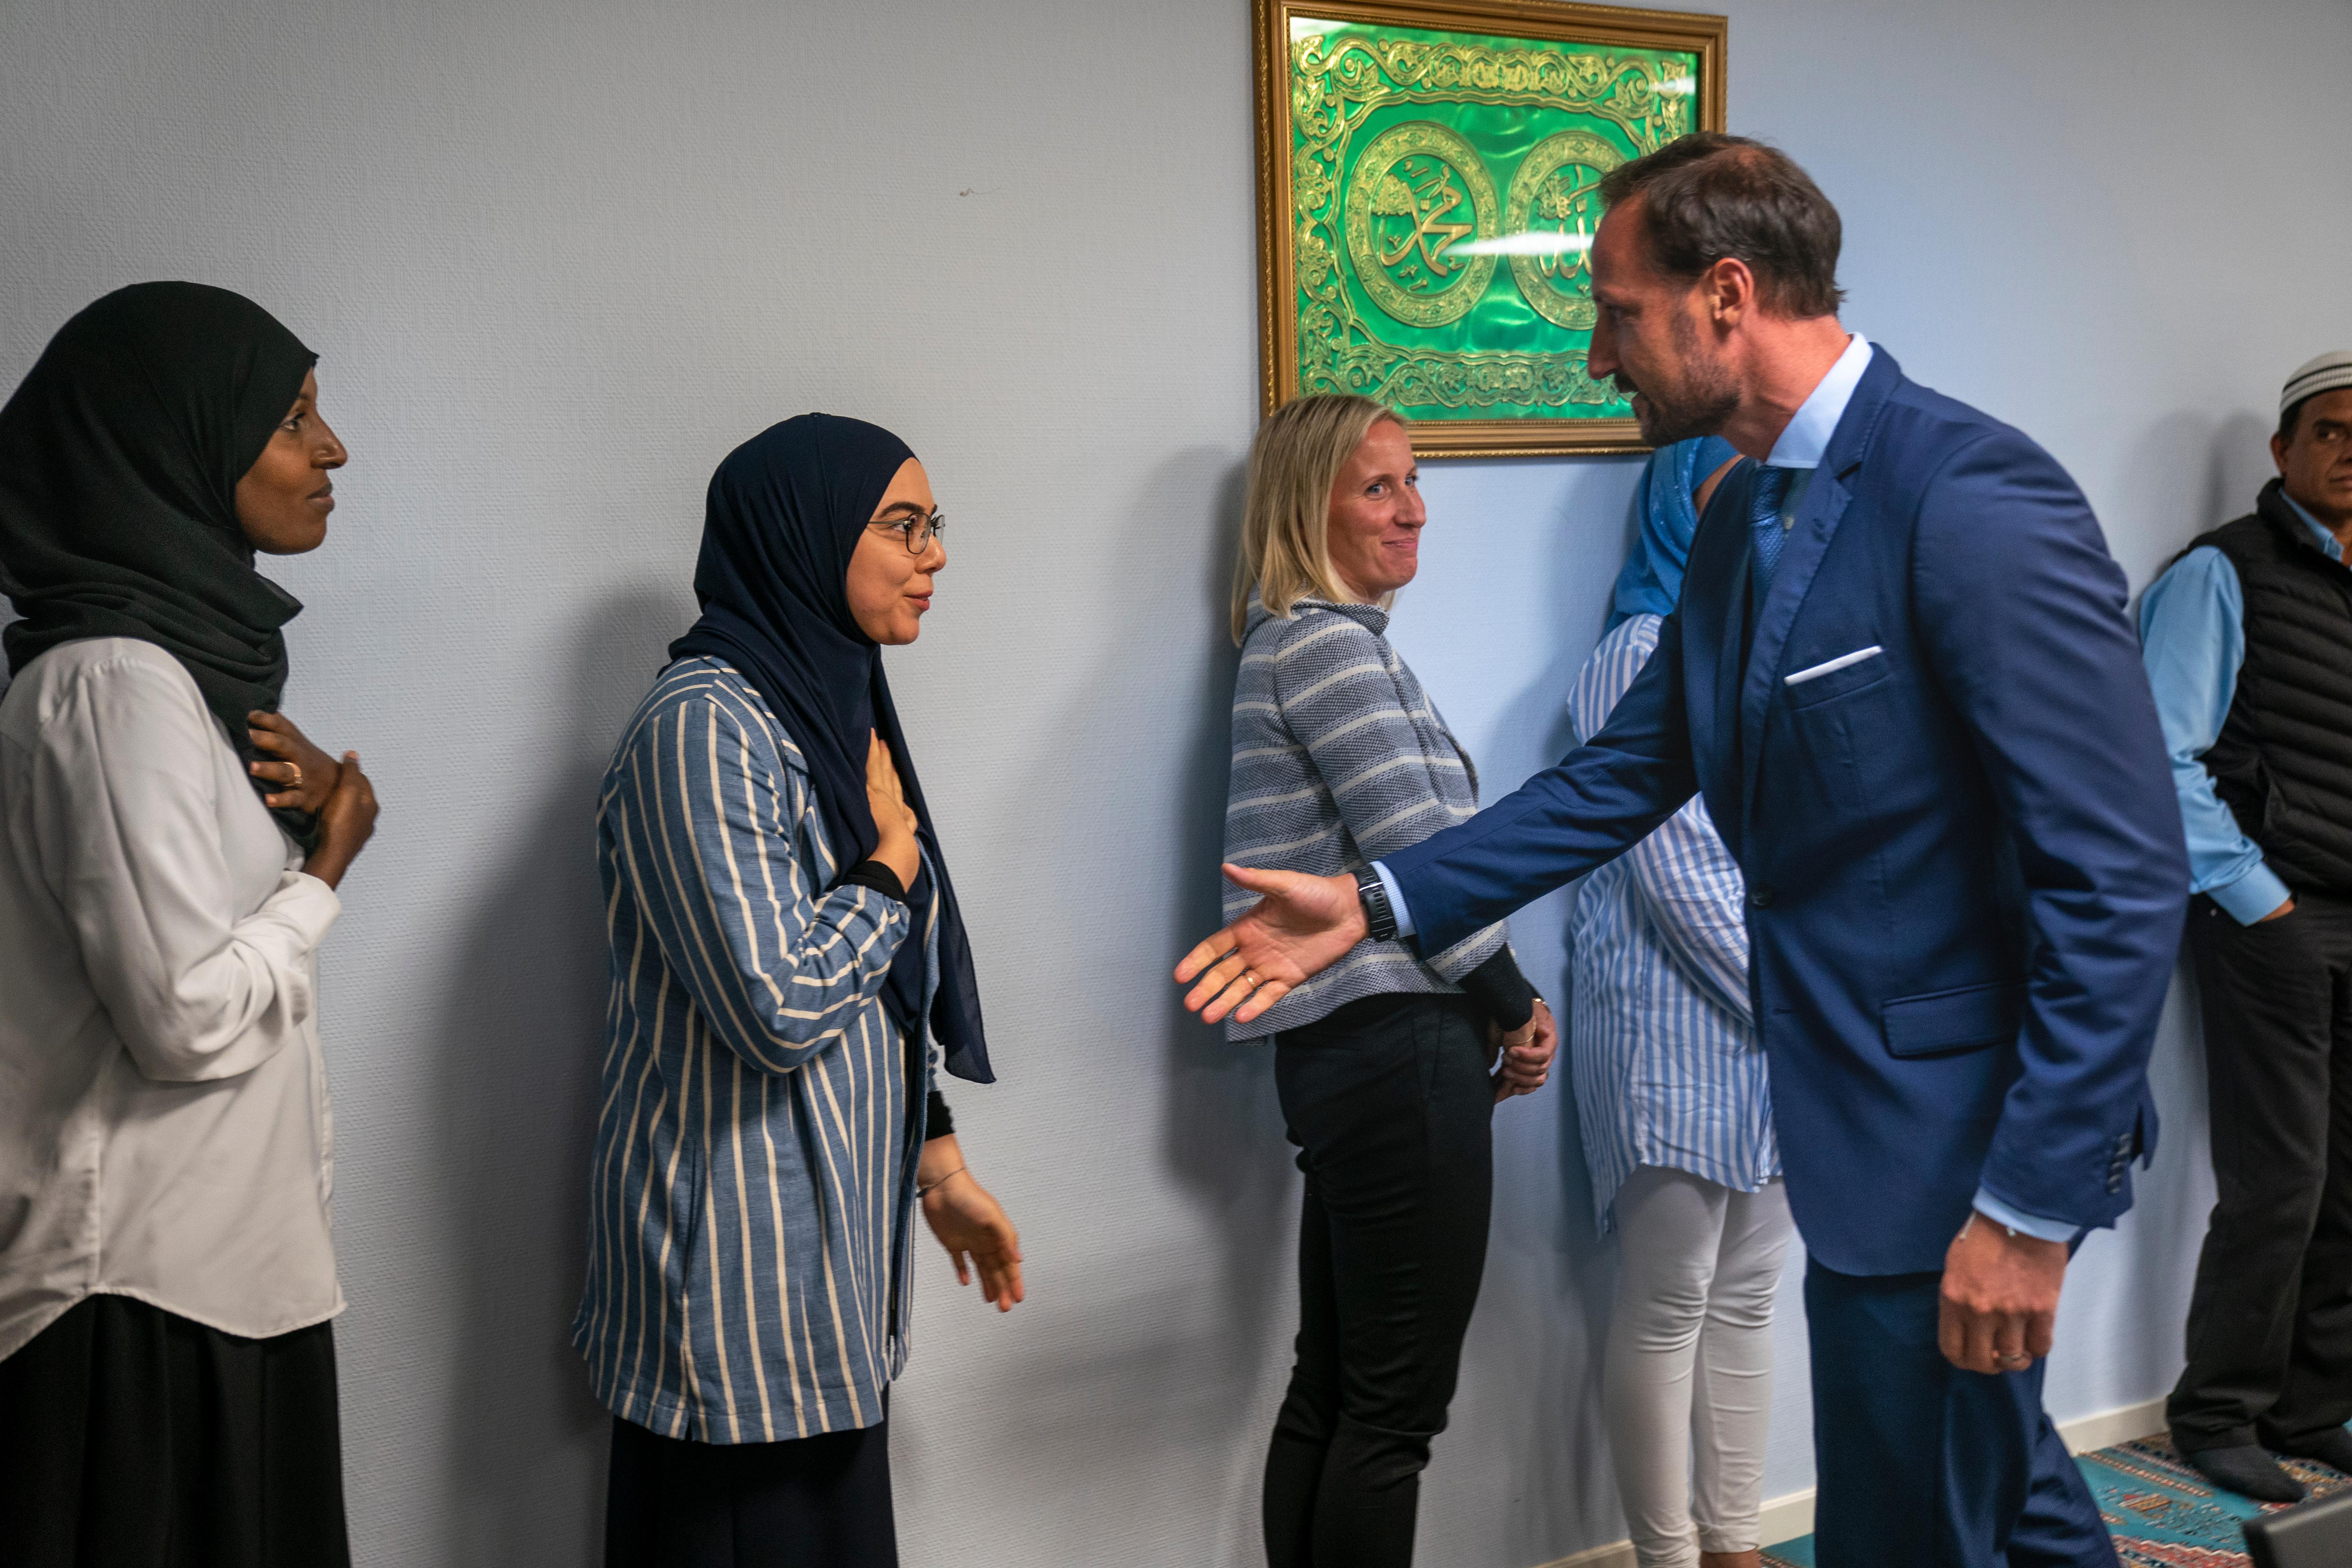 BÆRUM
Kronprins Haakon hilser på Sriha da han besøker den terrorrammede moskeen Al-Noor Islamic Centre på Skui i Bærum. Blodflekker og kulehull er synlige etter skyting og basketaket da Philip Manshaus tok seg inn i moskëen.
Foto: Heiko Junge / NTB scanpix